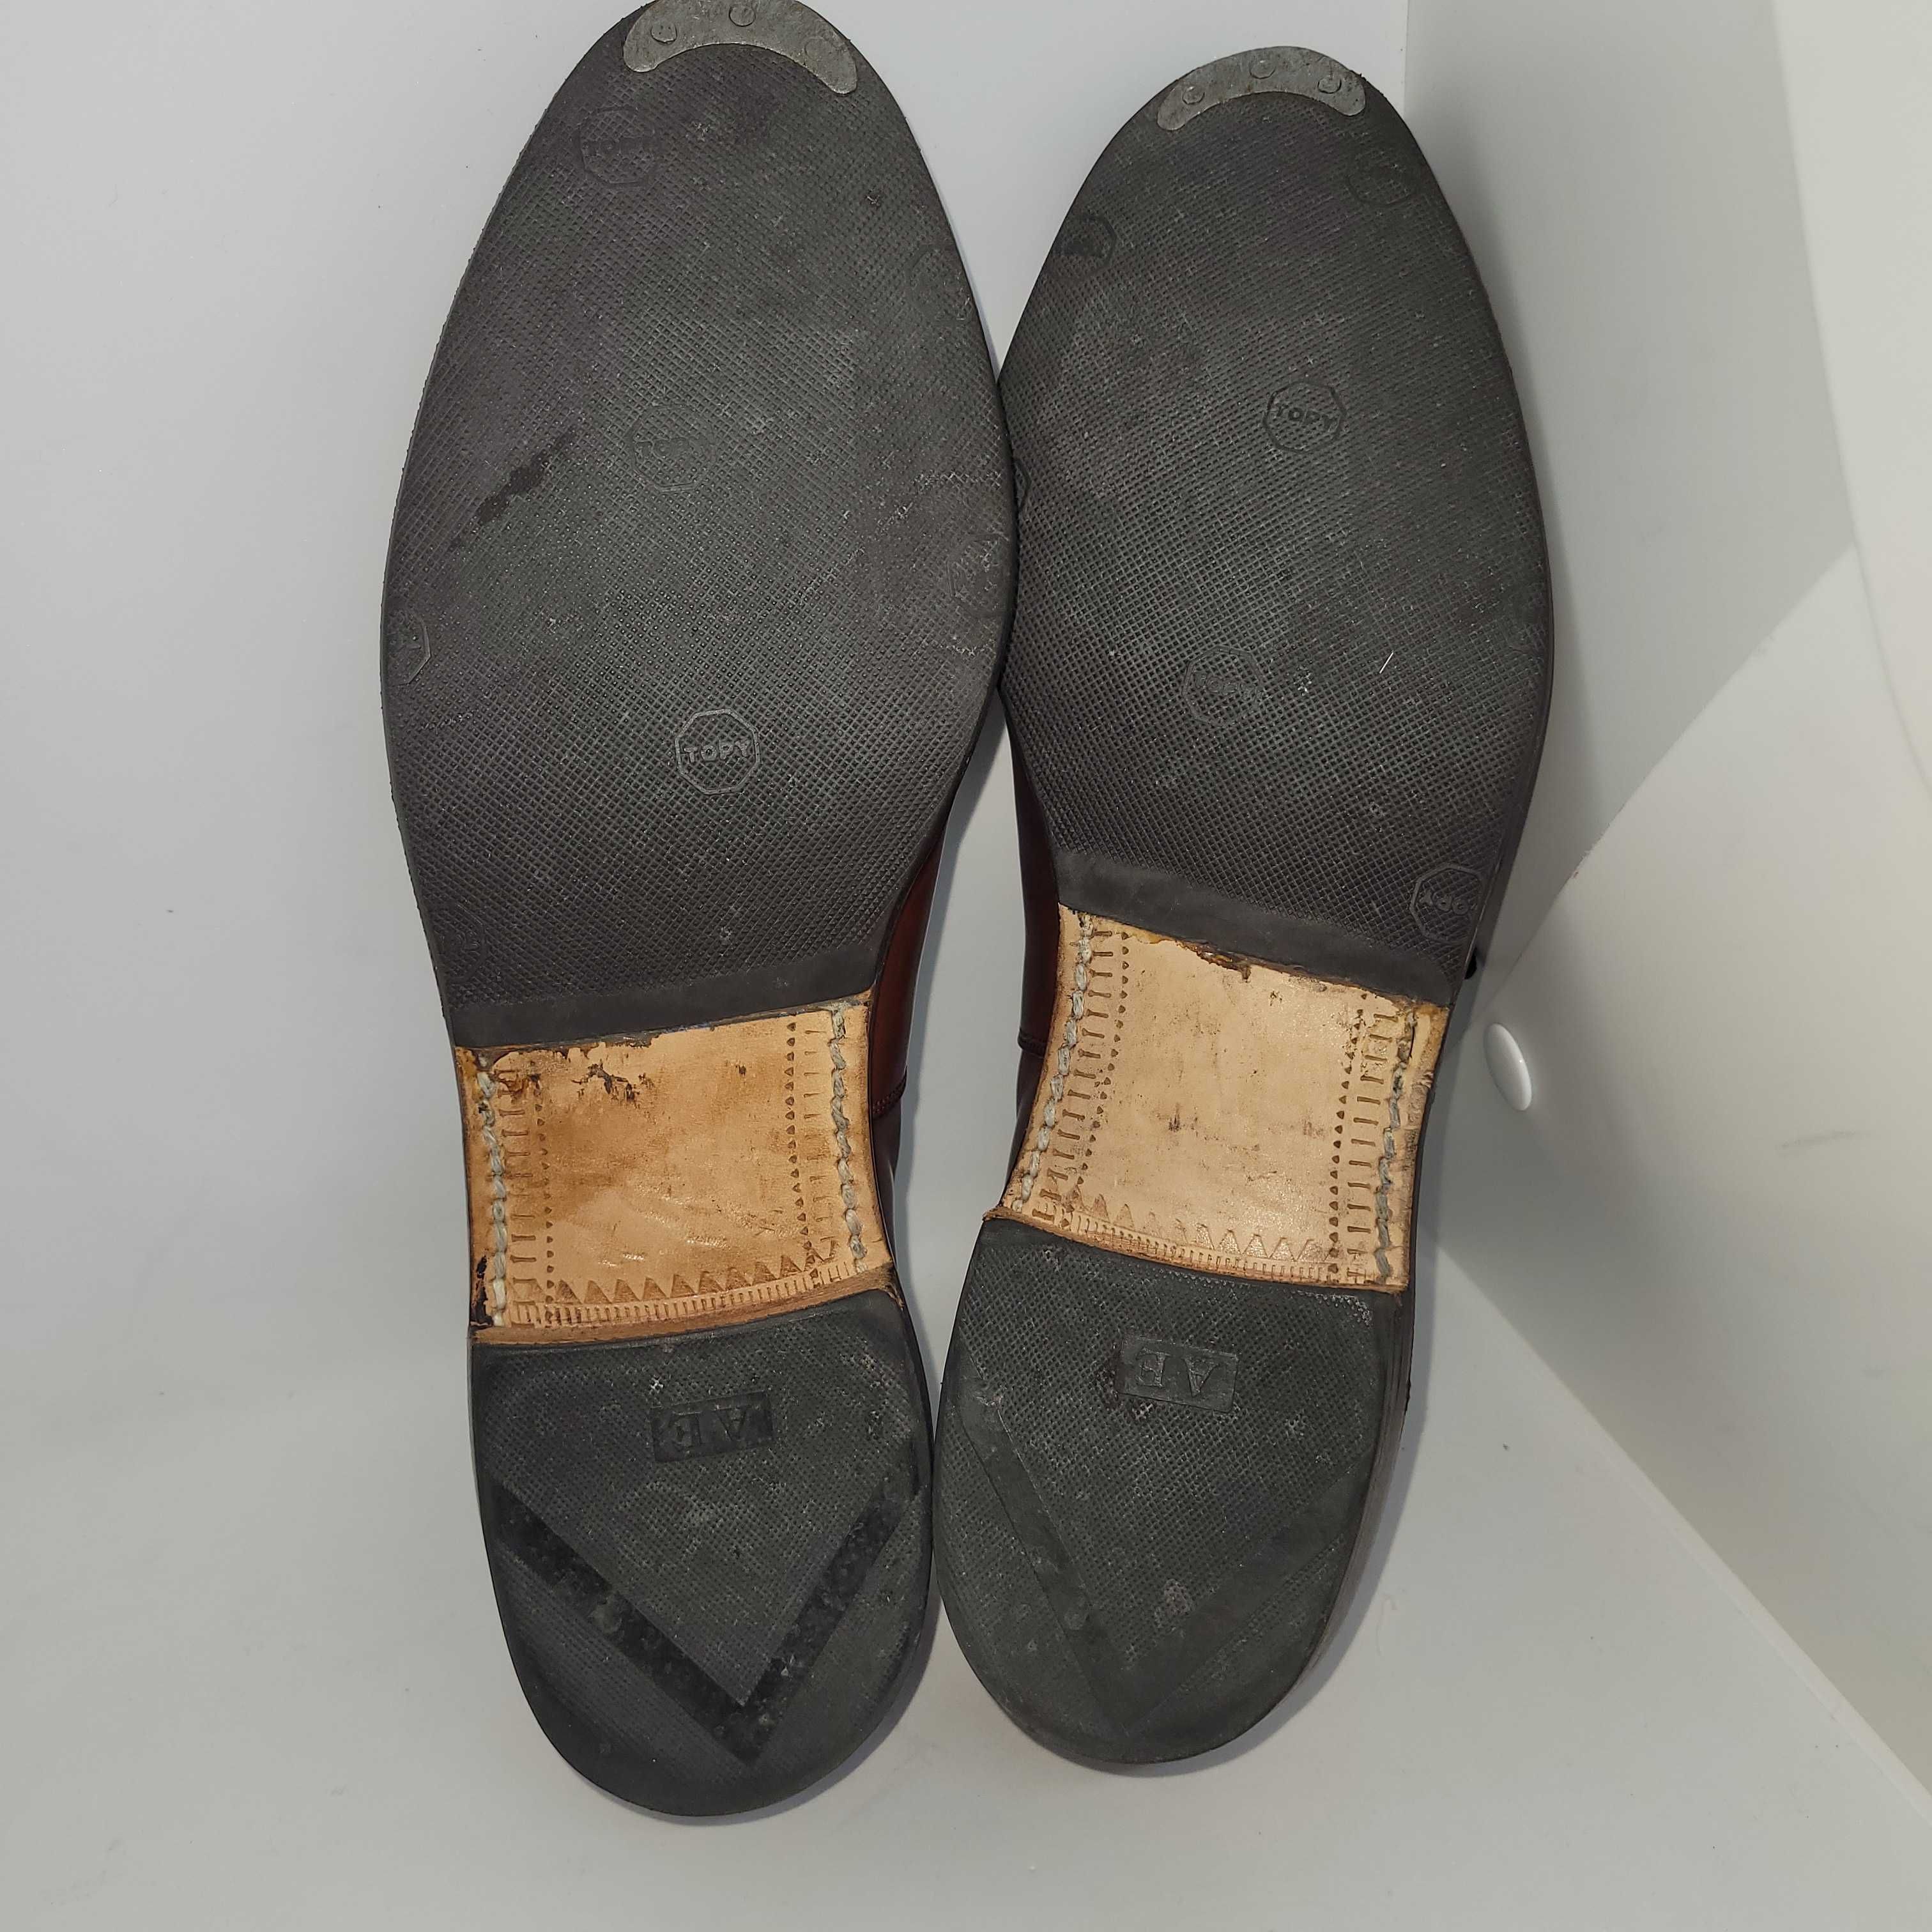 Allen Edmonds "Sheffield" Cognac Leather Oxford Dress Shoes, US 6 D